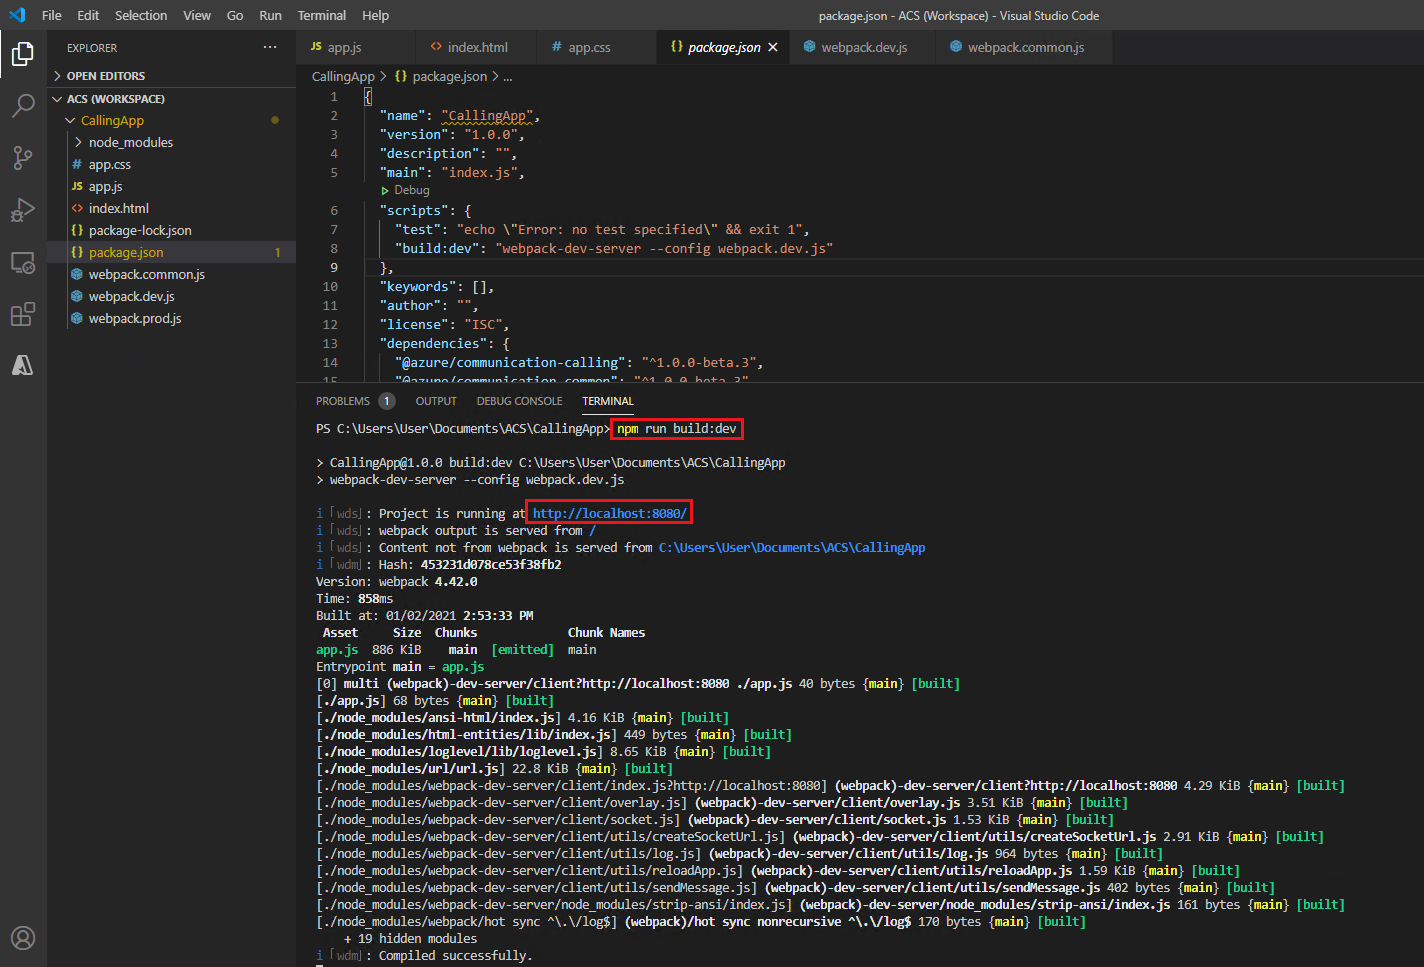 Screenshot that shows starting a development server.